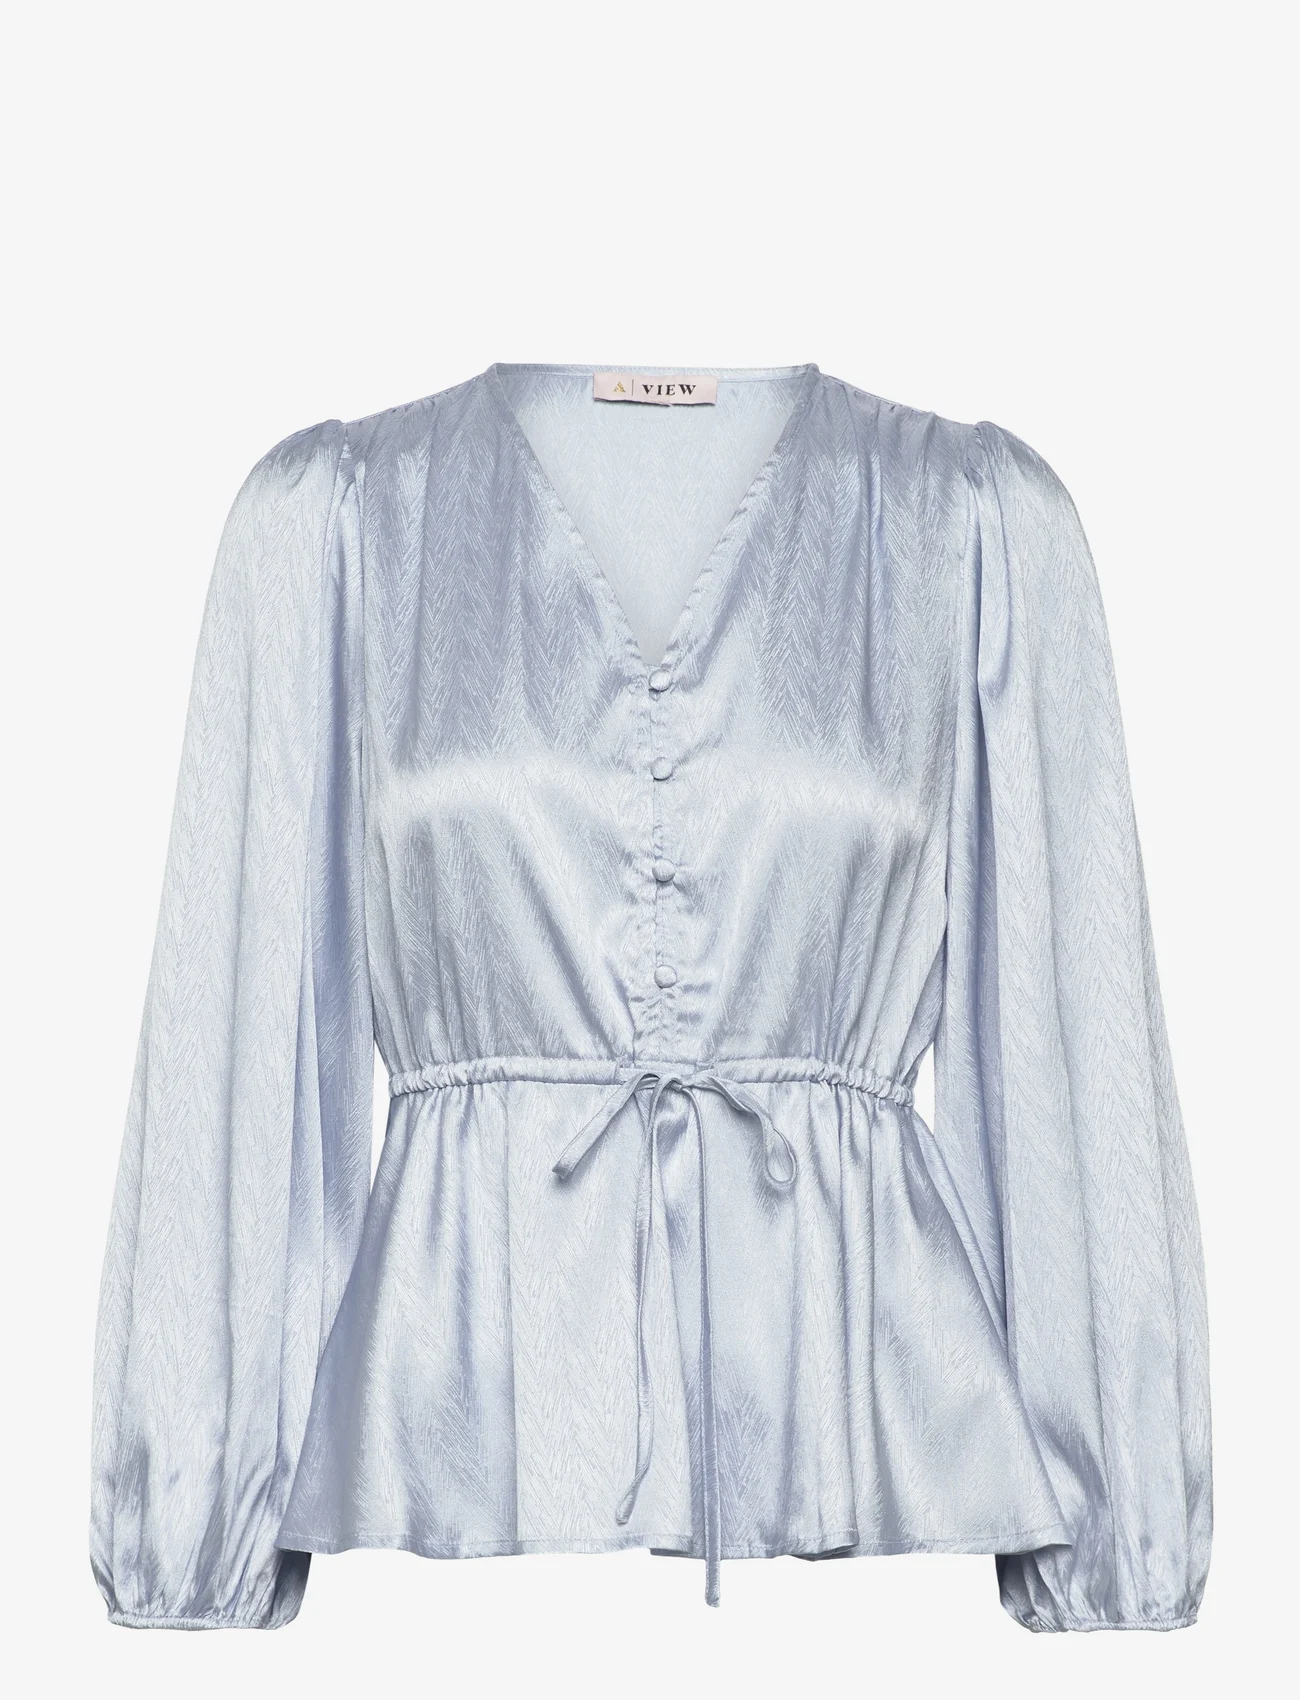 A-View - Luna blouse - langärmlige blusen - light blue - 0